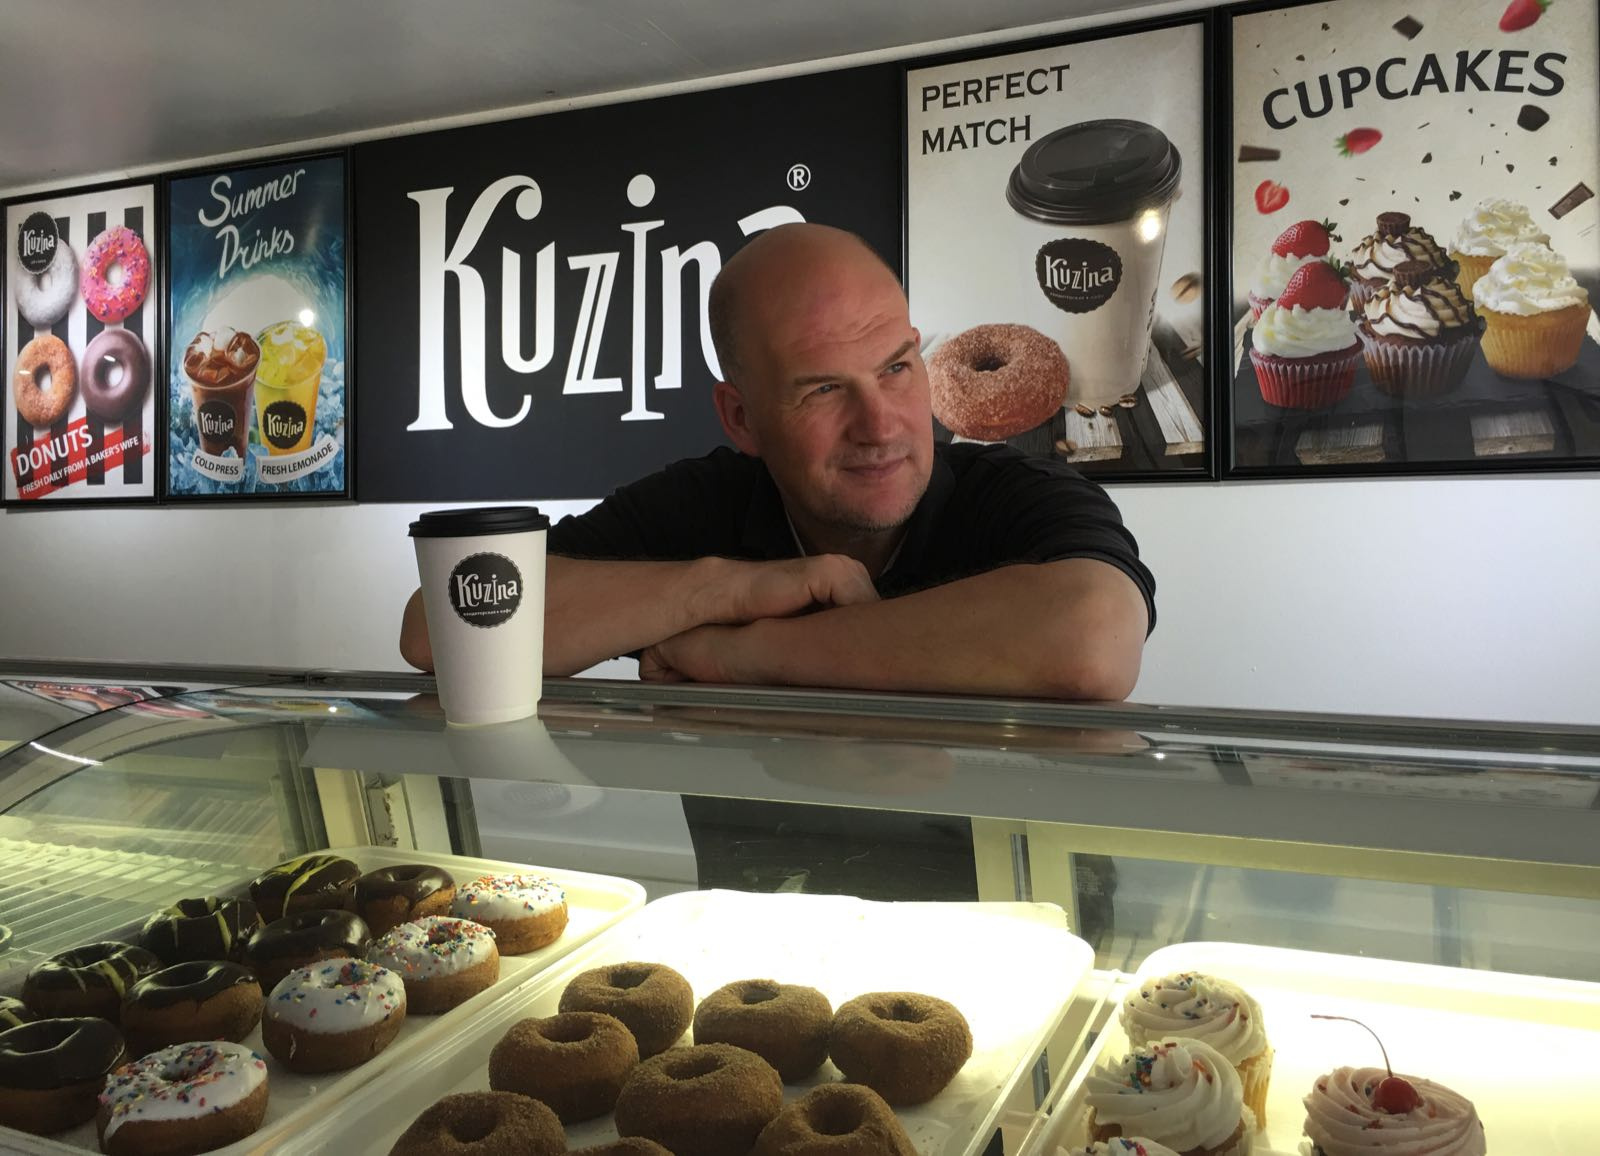 В американской Kuzina будут продаваться такие же пончики, эклеры и торты, как в русской 